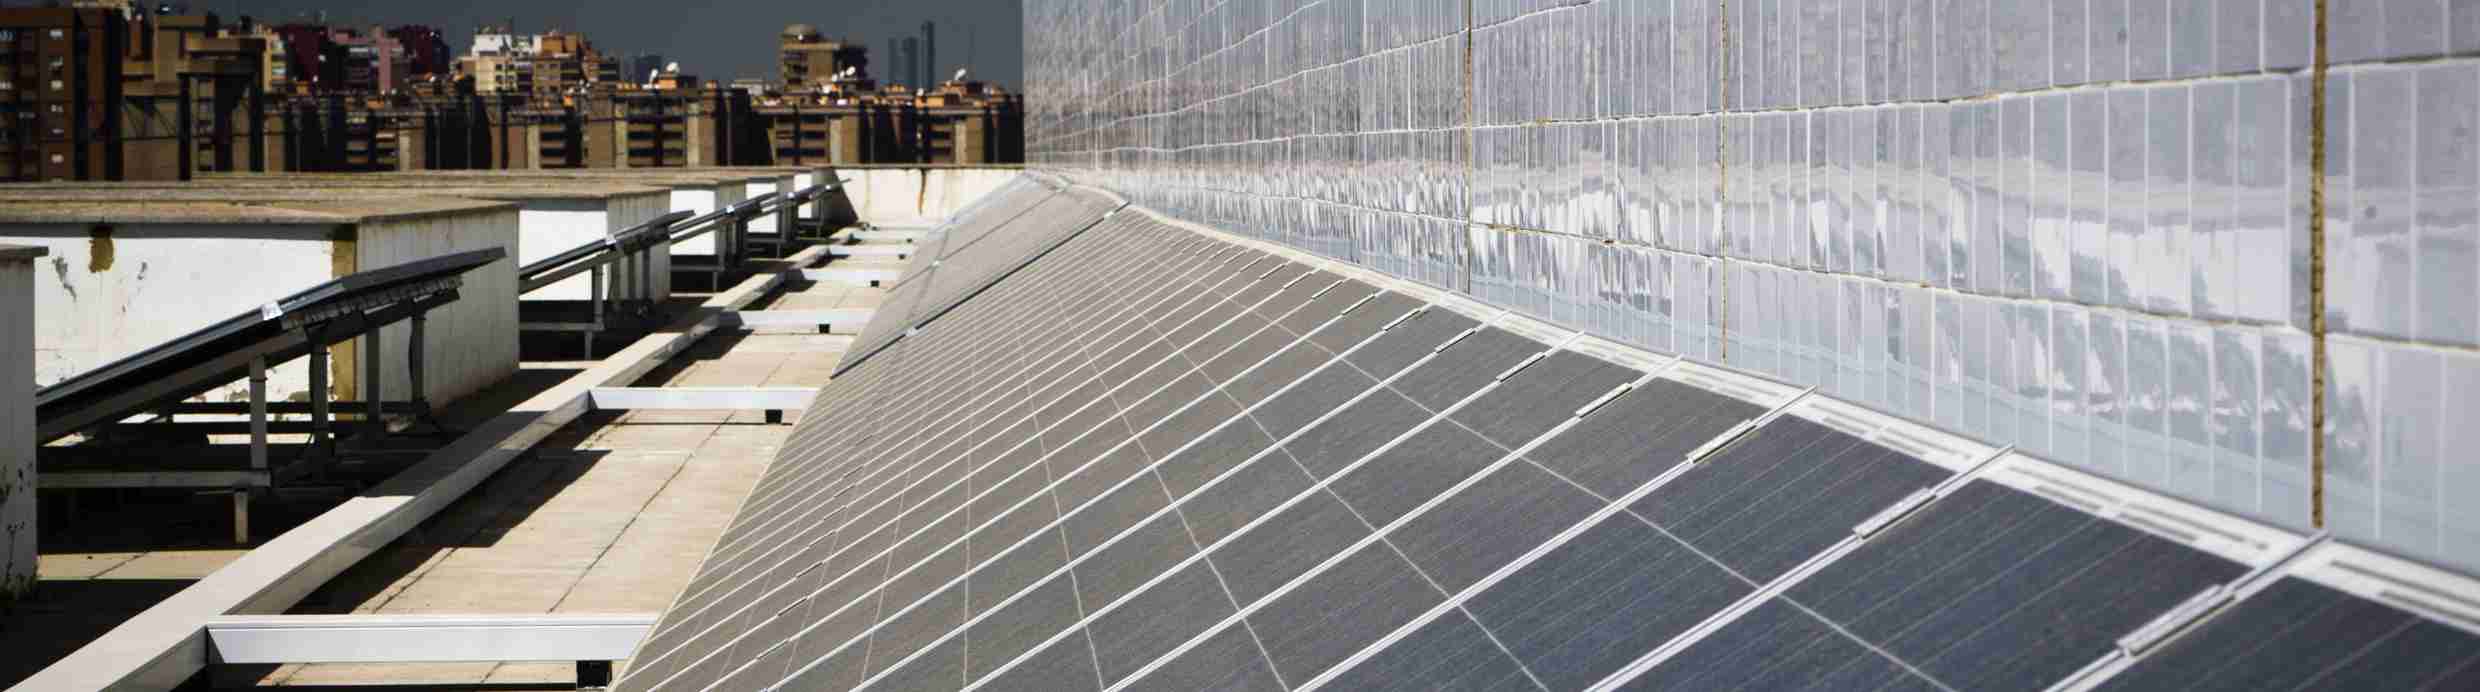 fotografia panells solars universitat de valencia